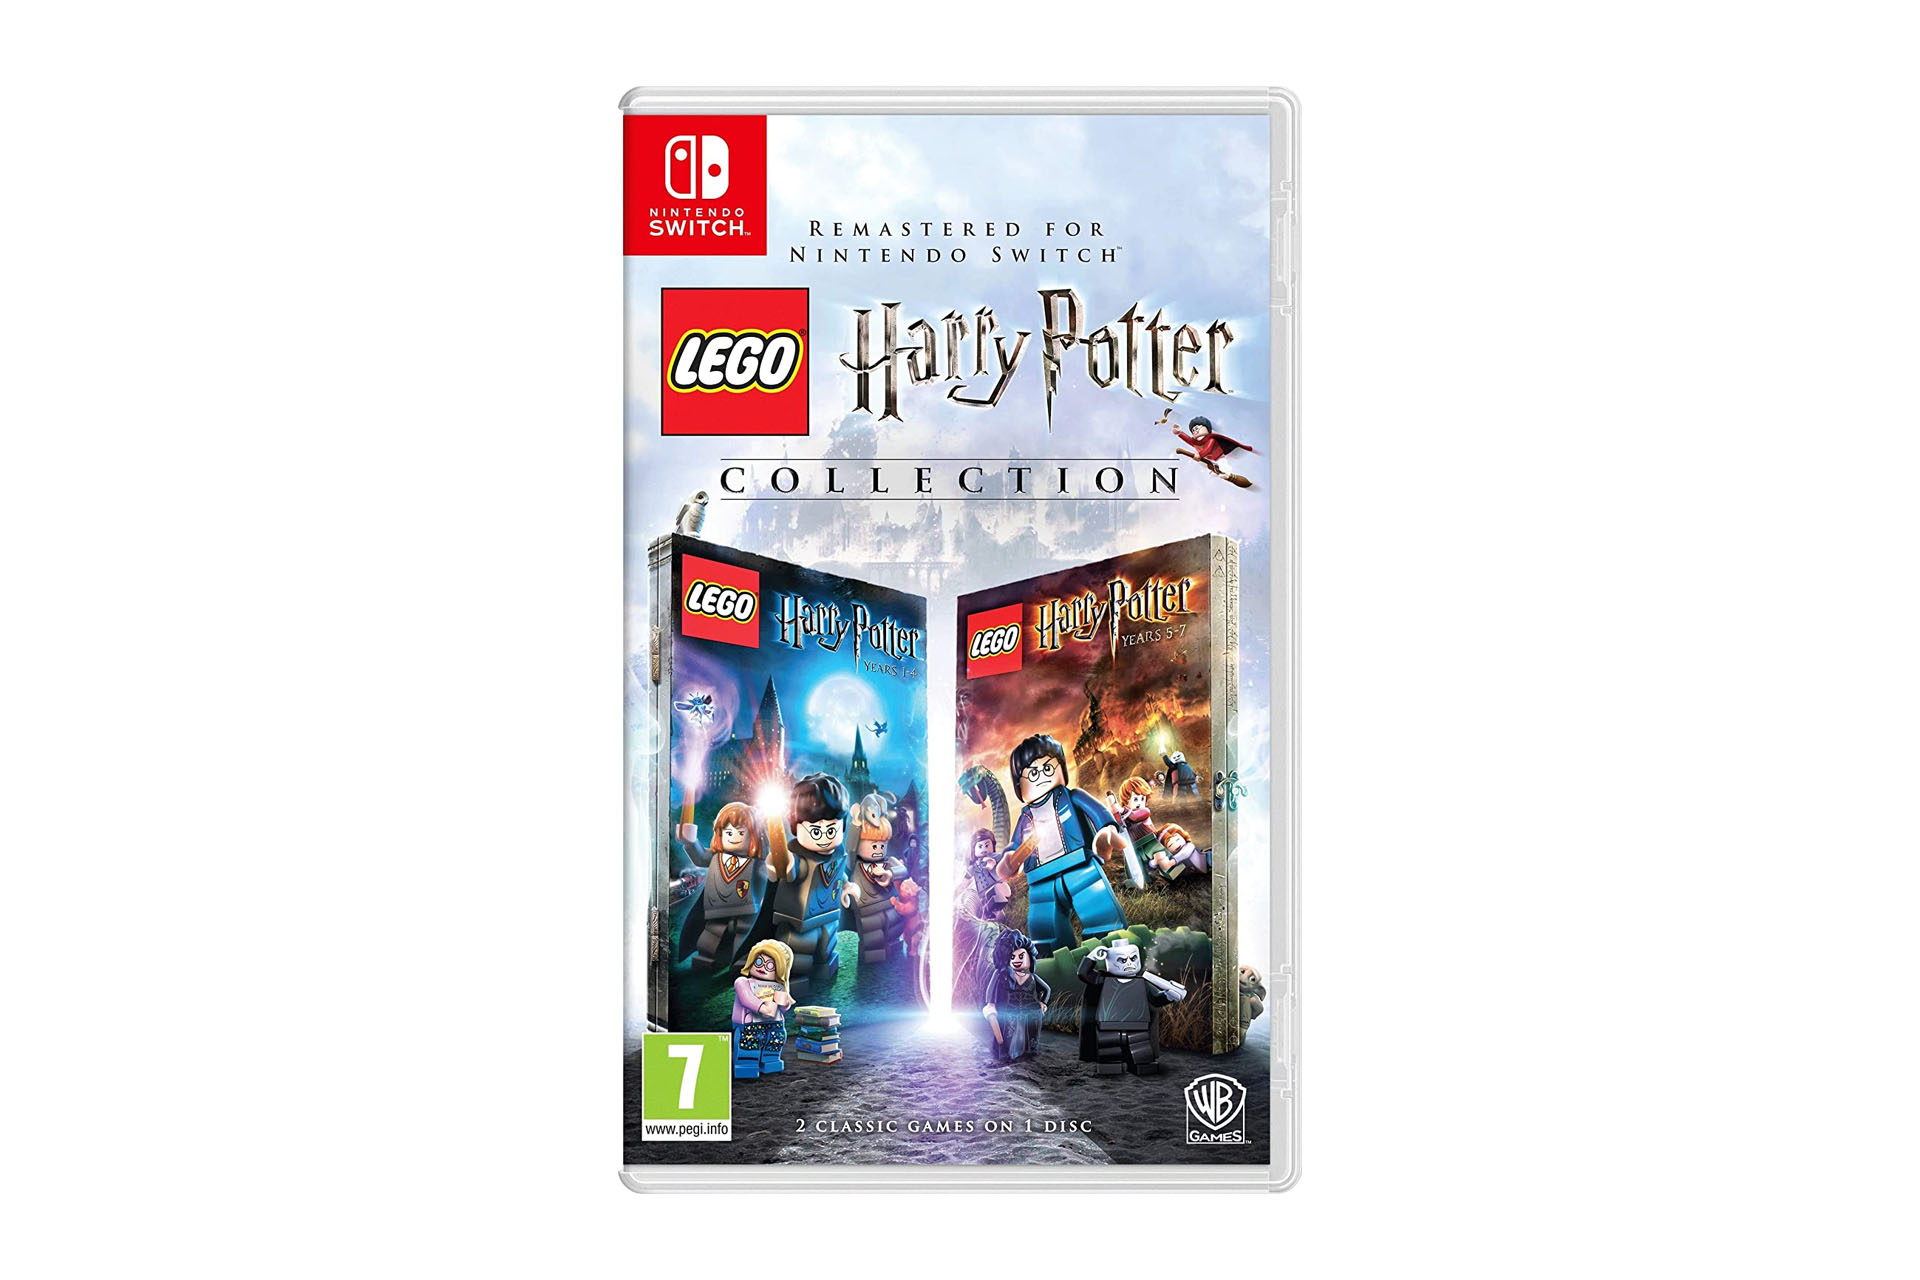 Tuotekuva Lego Harry Potterista Switchissä tavallisella taustalla